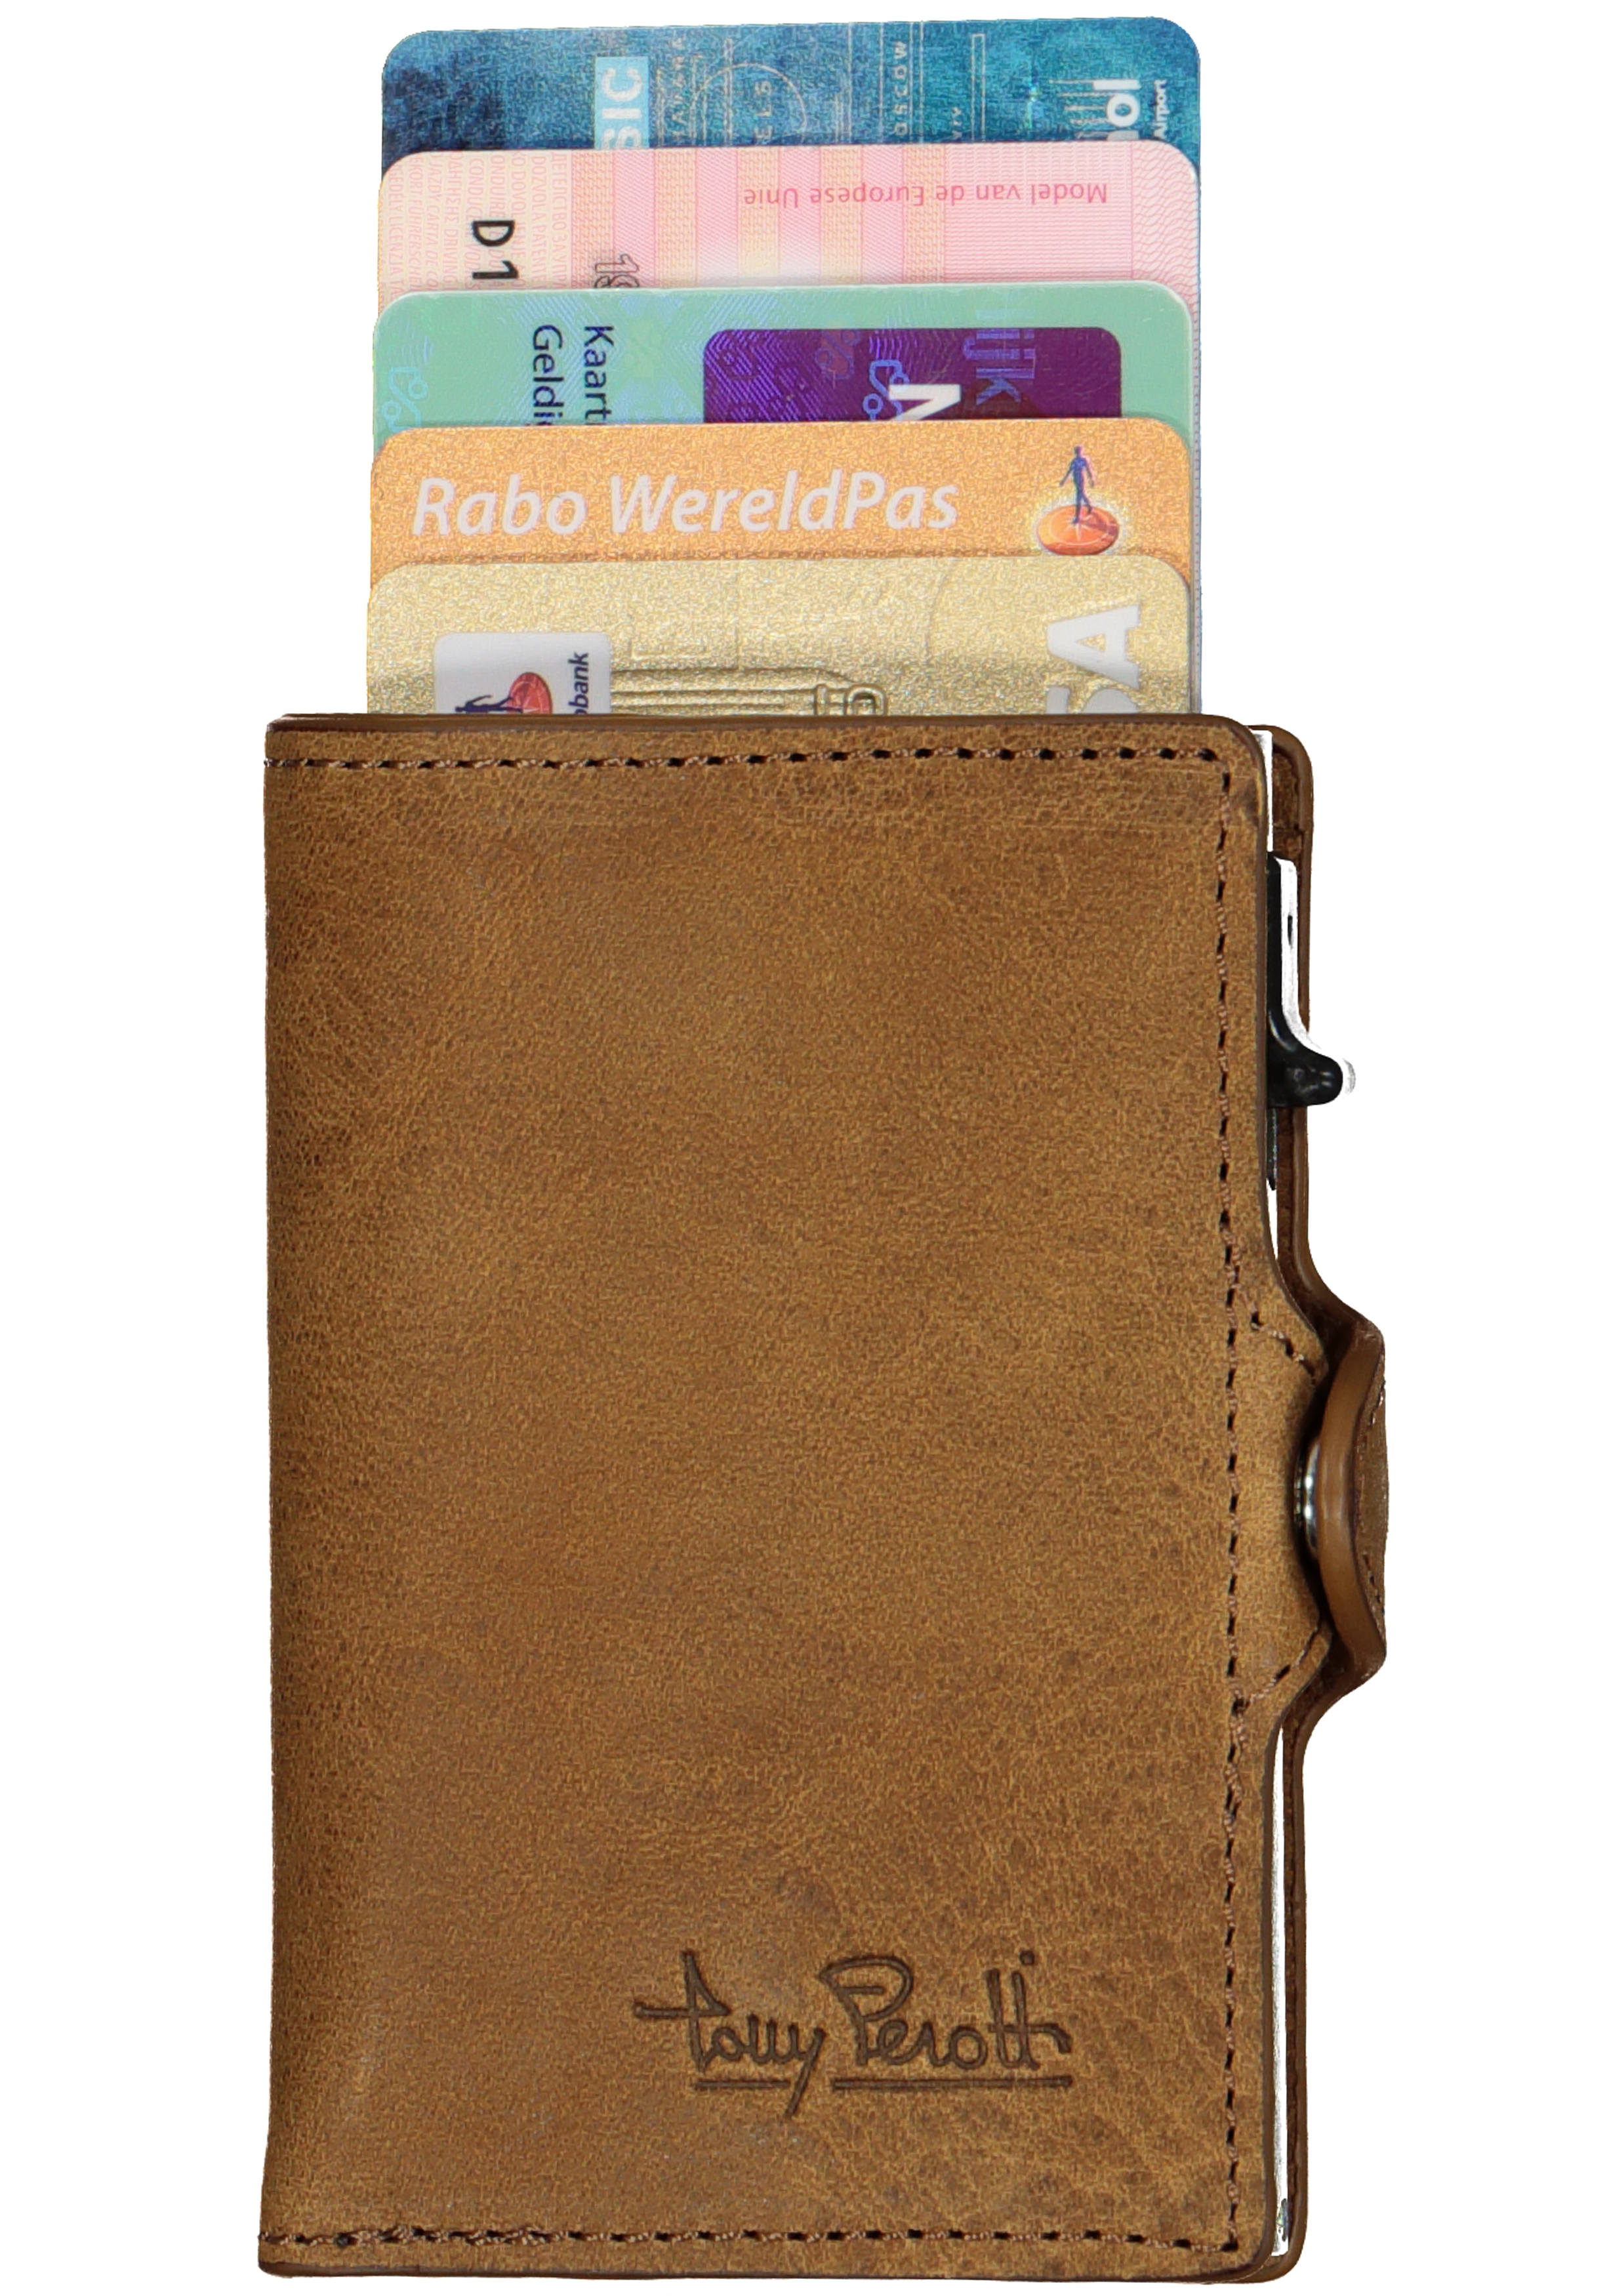 Raadplegen lucht Verwijdering Tony Perotti pasjes RFID portemonnee (6 pasjes) met papiergeldvak, bruin...  - Shop de nieuwste voorjaarsmode